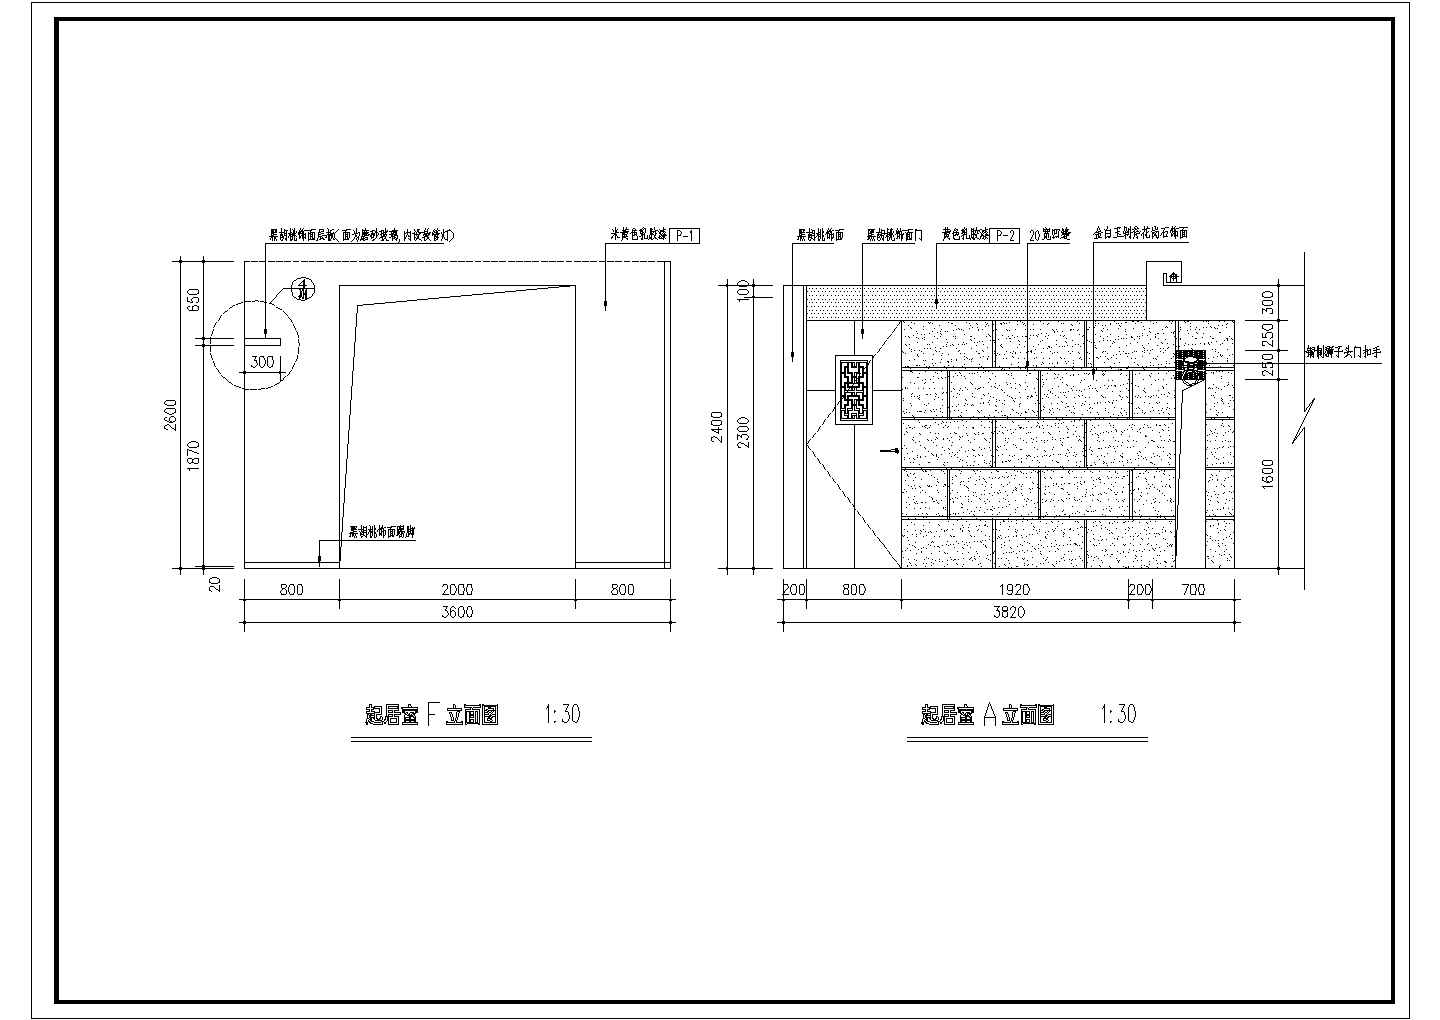 江苏某建筑集团中式样板间全套室内装修设计cad平面施工图